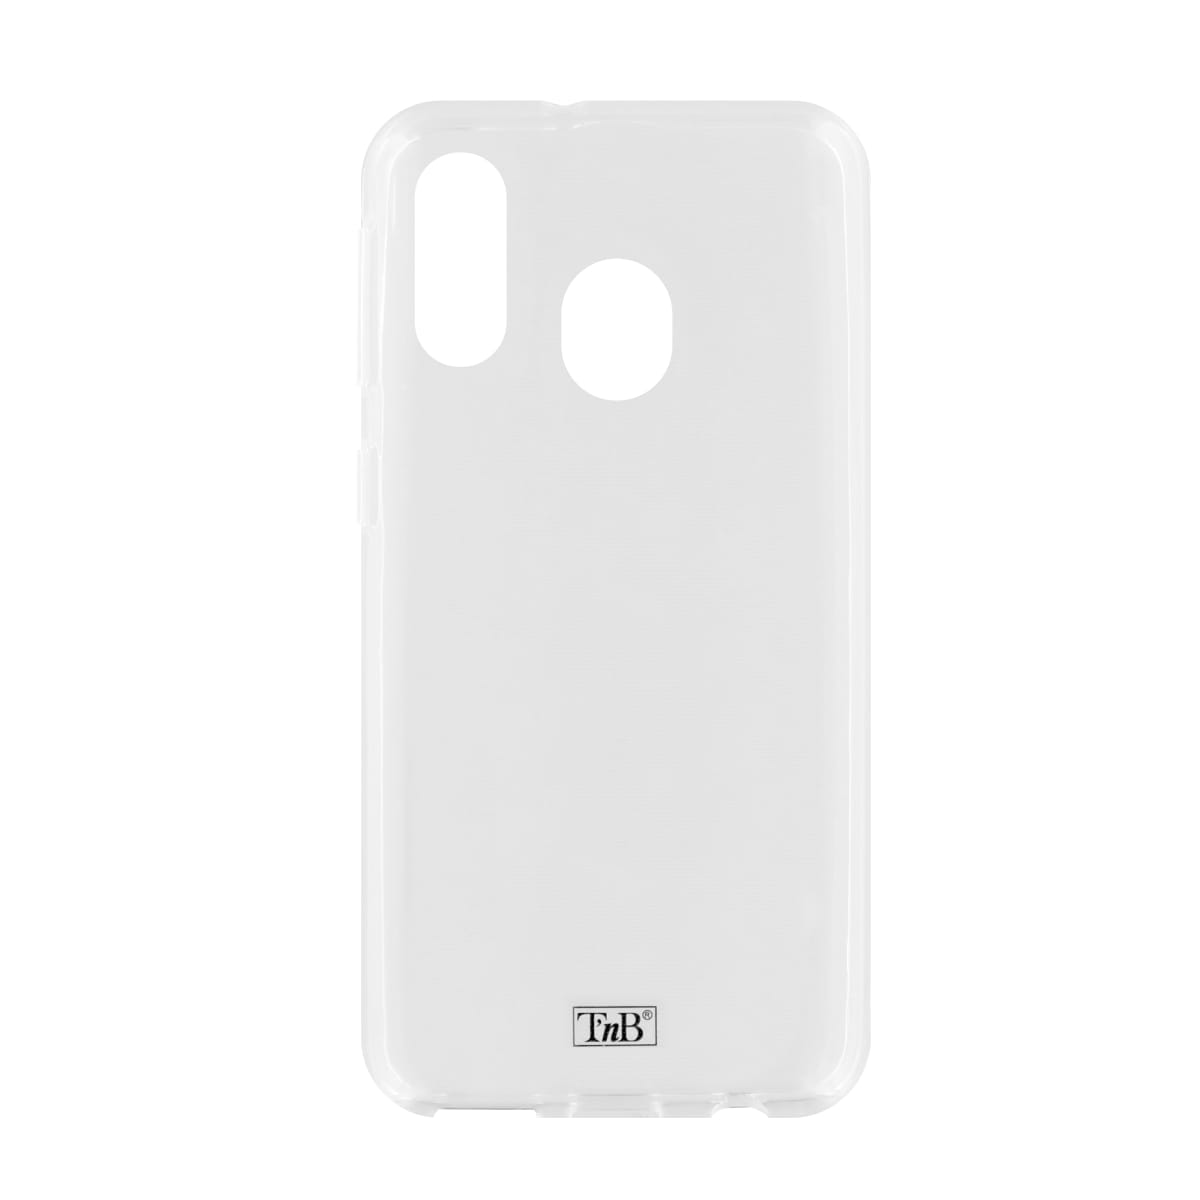 Samsung A40 transparent soft case